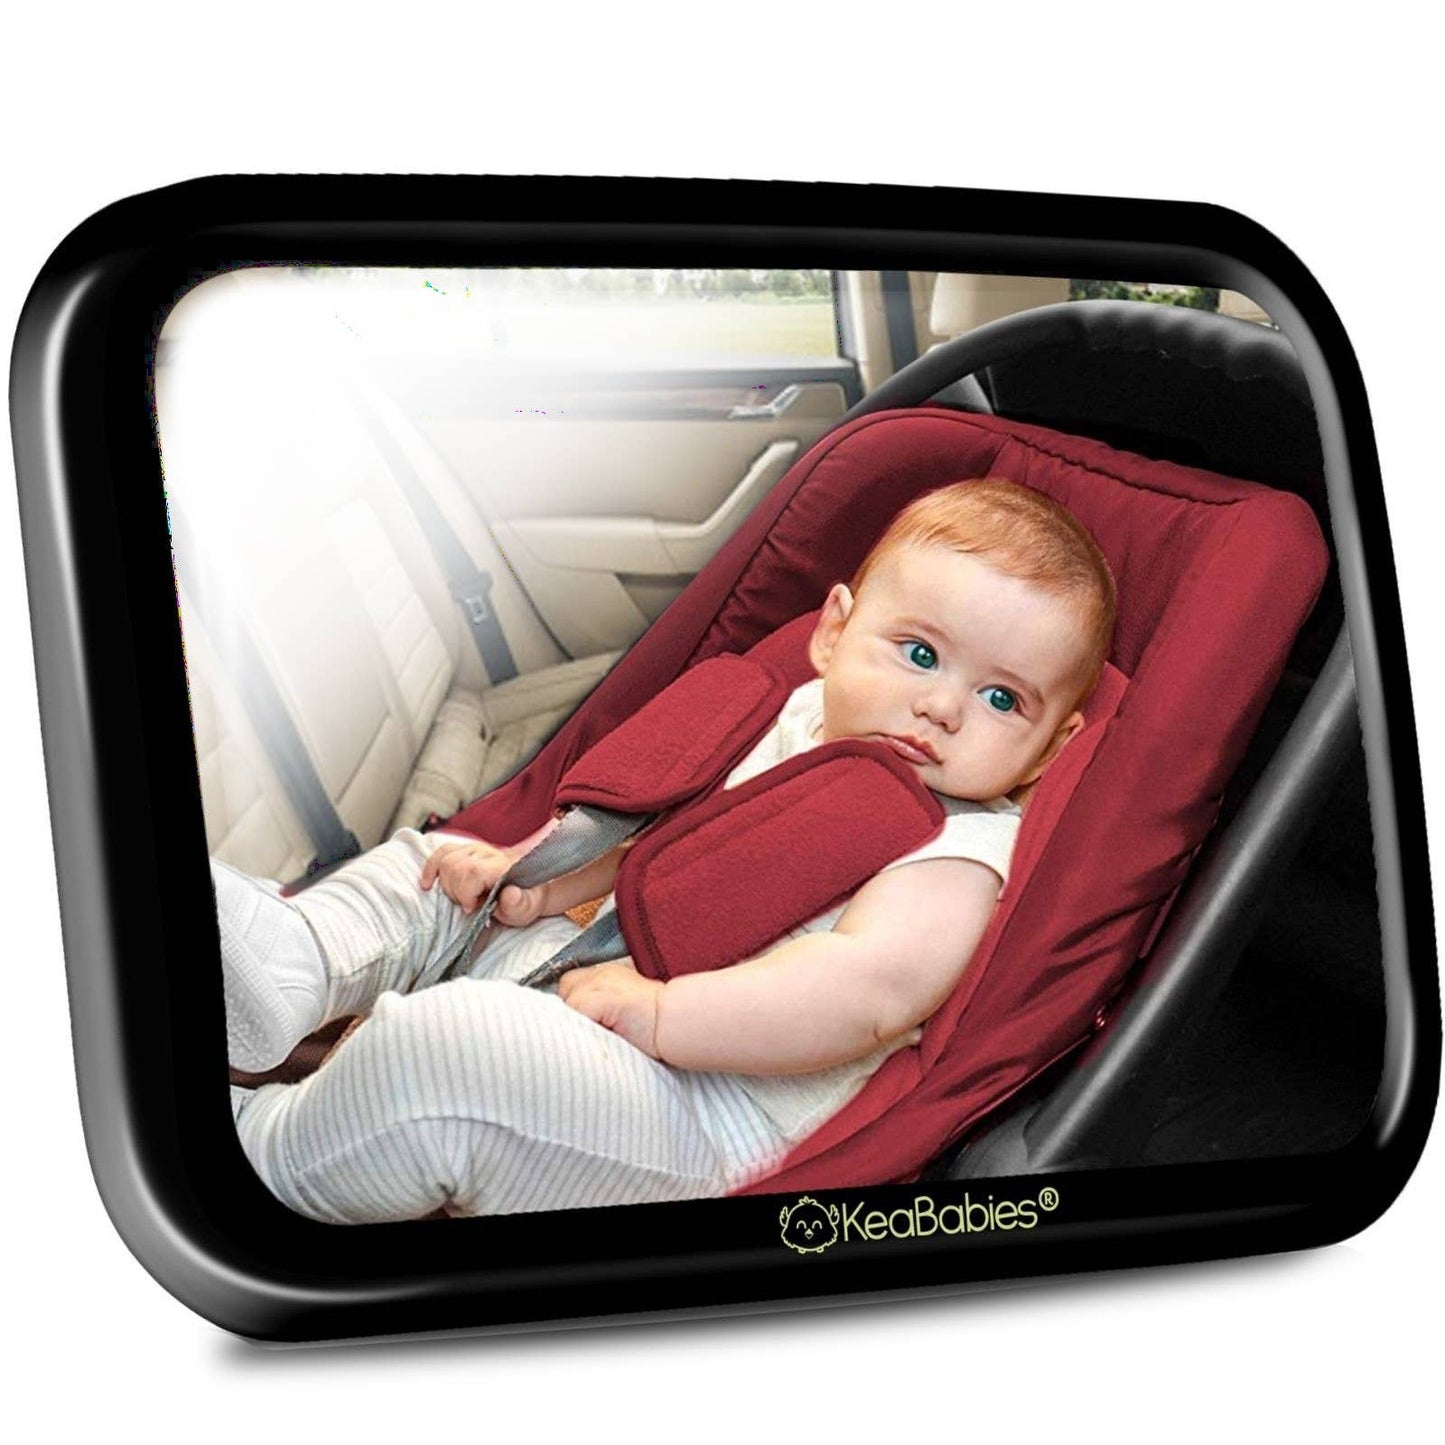 KeaBabies - KeaBabies Baby Car Seat Mirror (Large, Sleek Black)